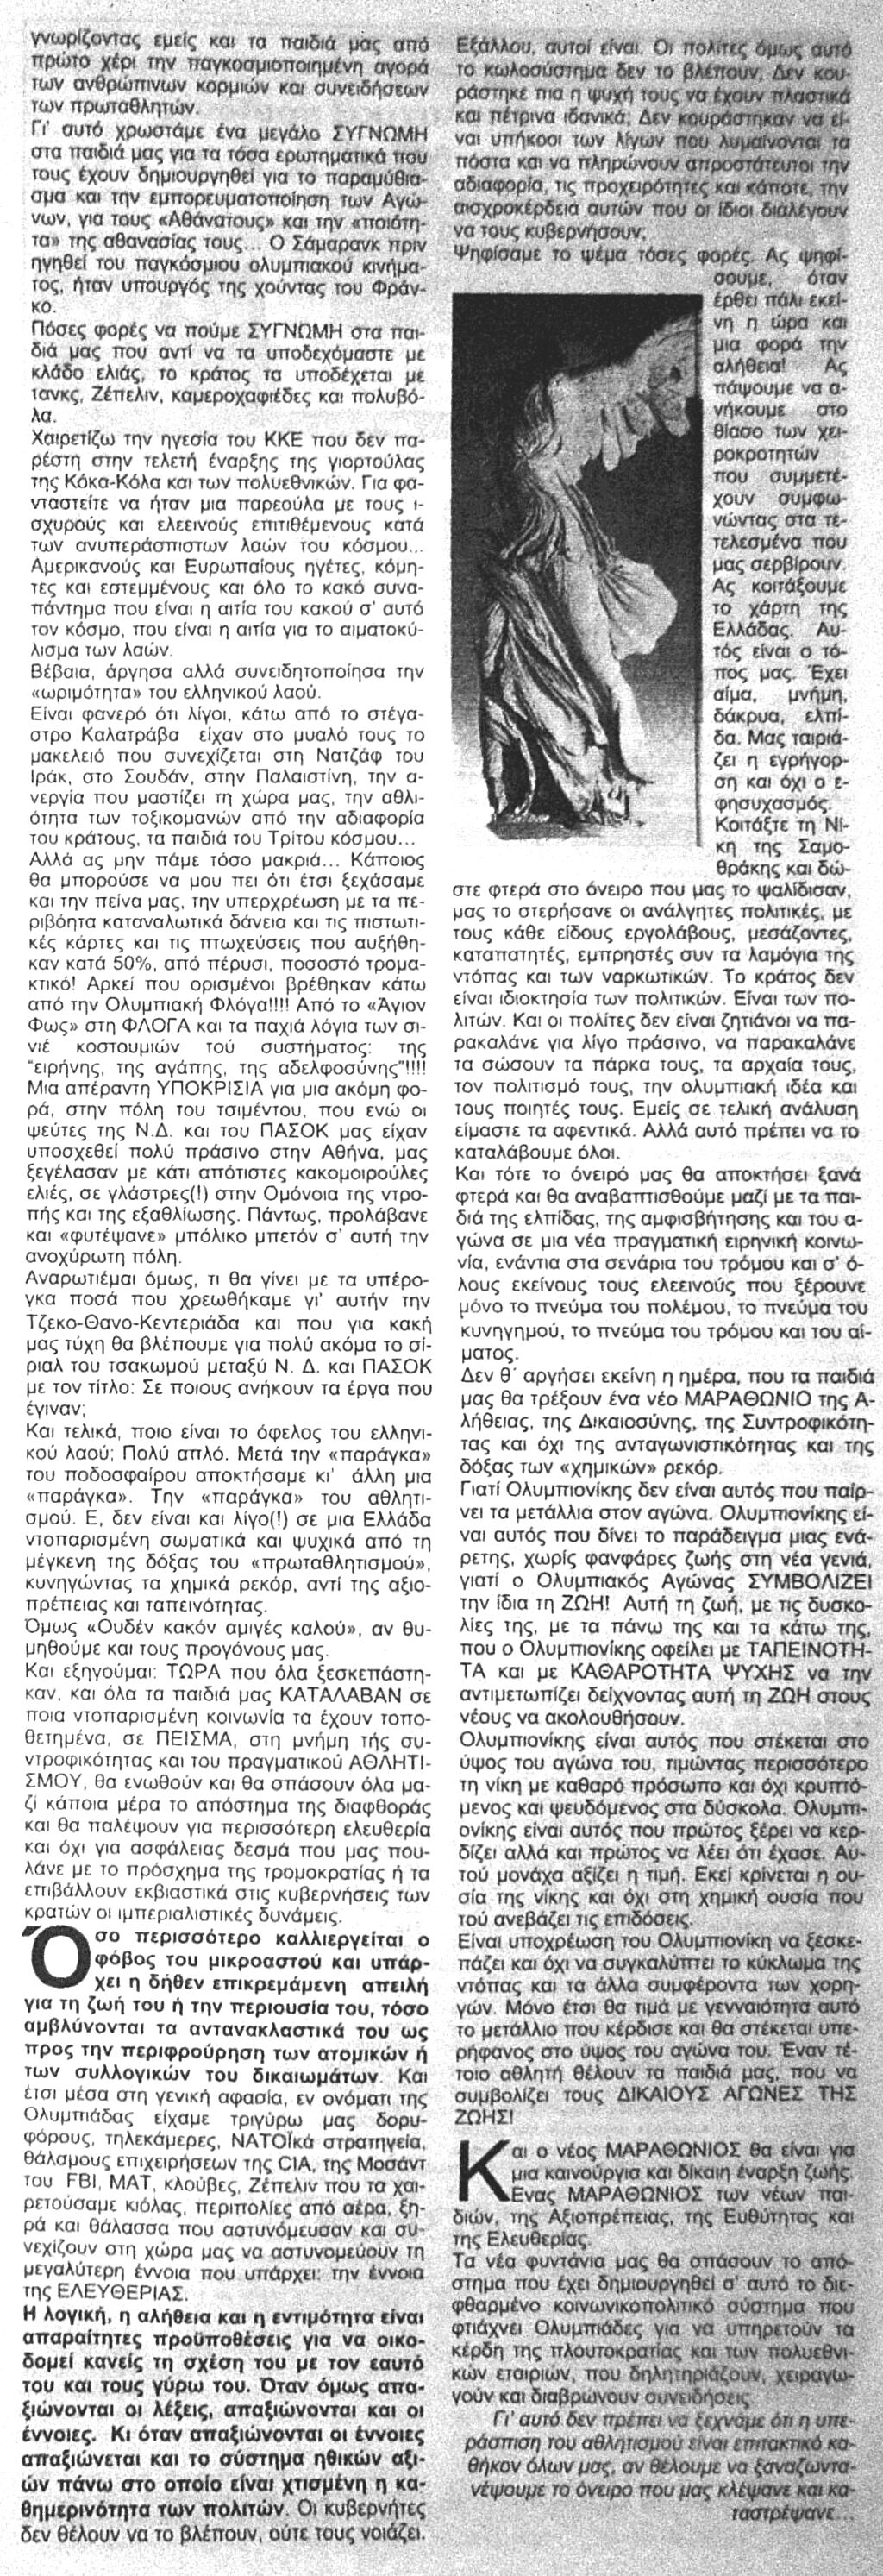 Αιγάλεω - Η Ρένα και η παράγκα - Φύλλο 220 - Εφημερίδα Αιγάλεω Dsc05759